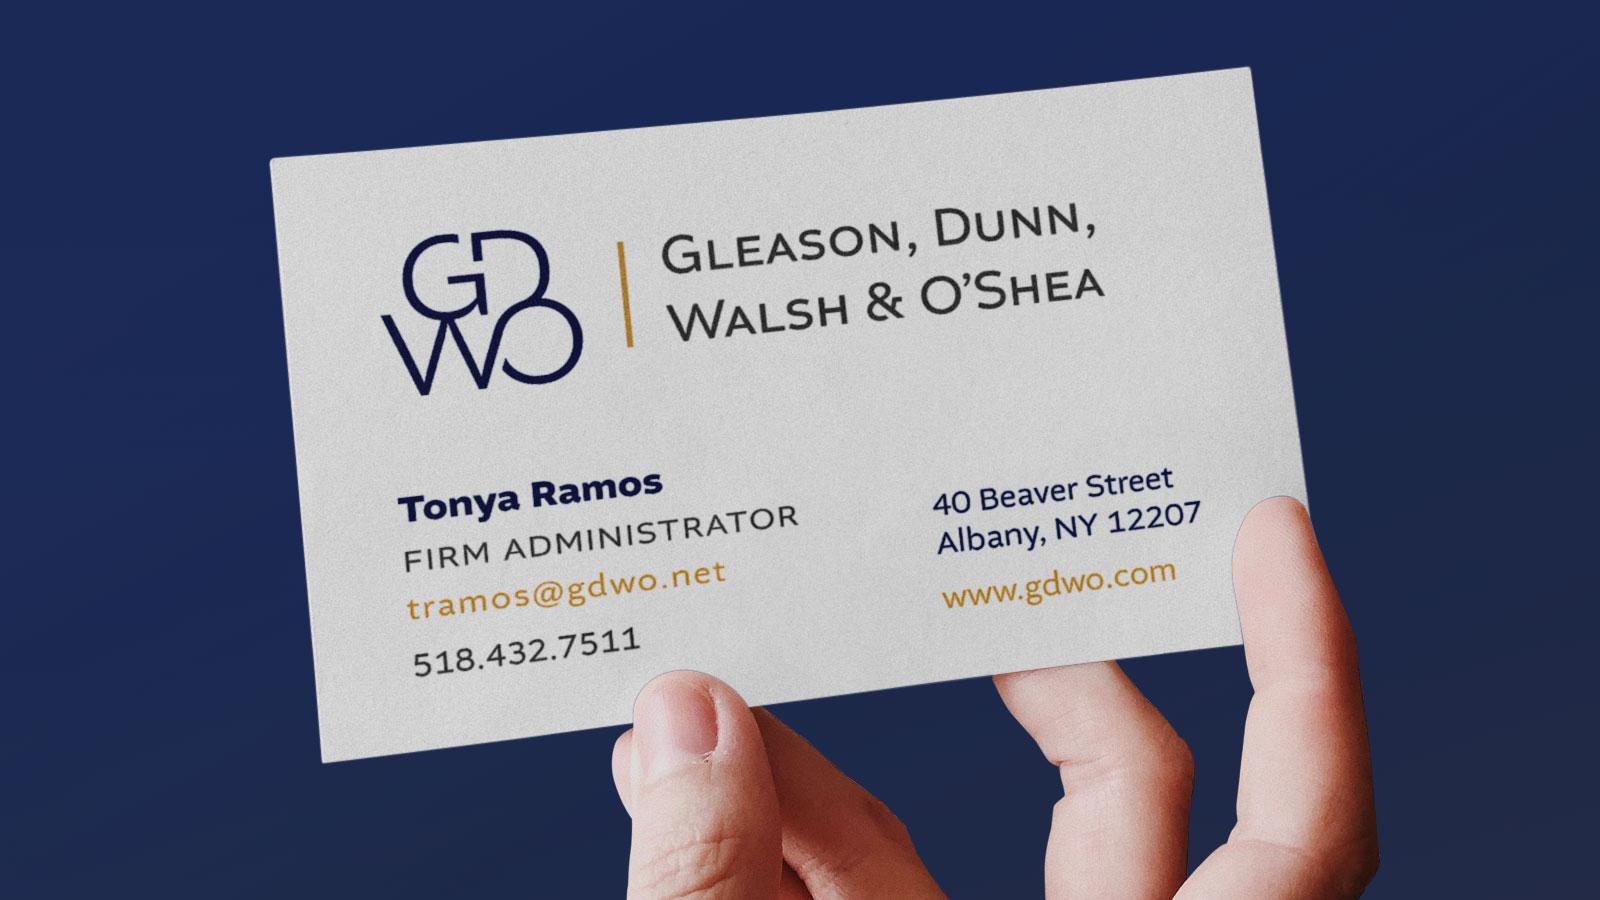 Gleason, Dunn, Walsh & O’Shea | Business Card